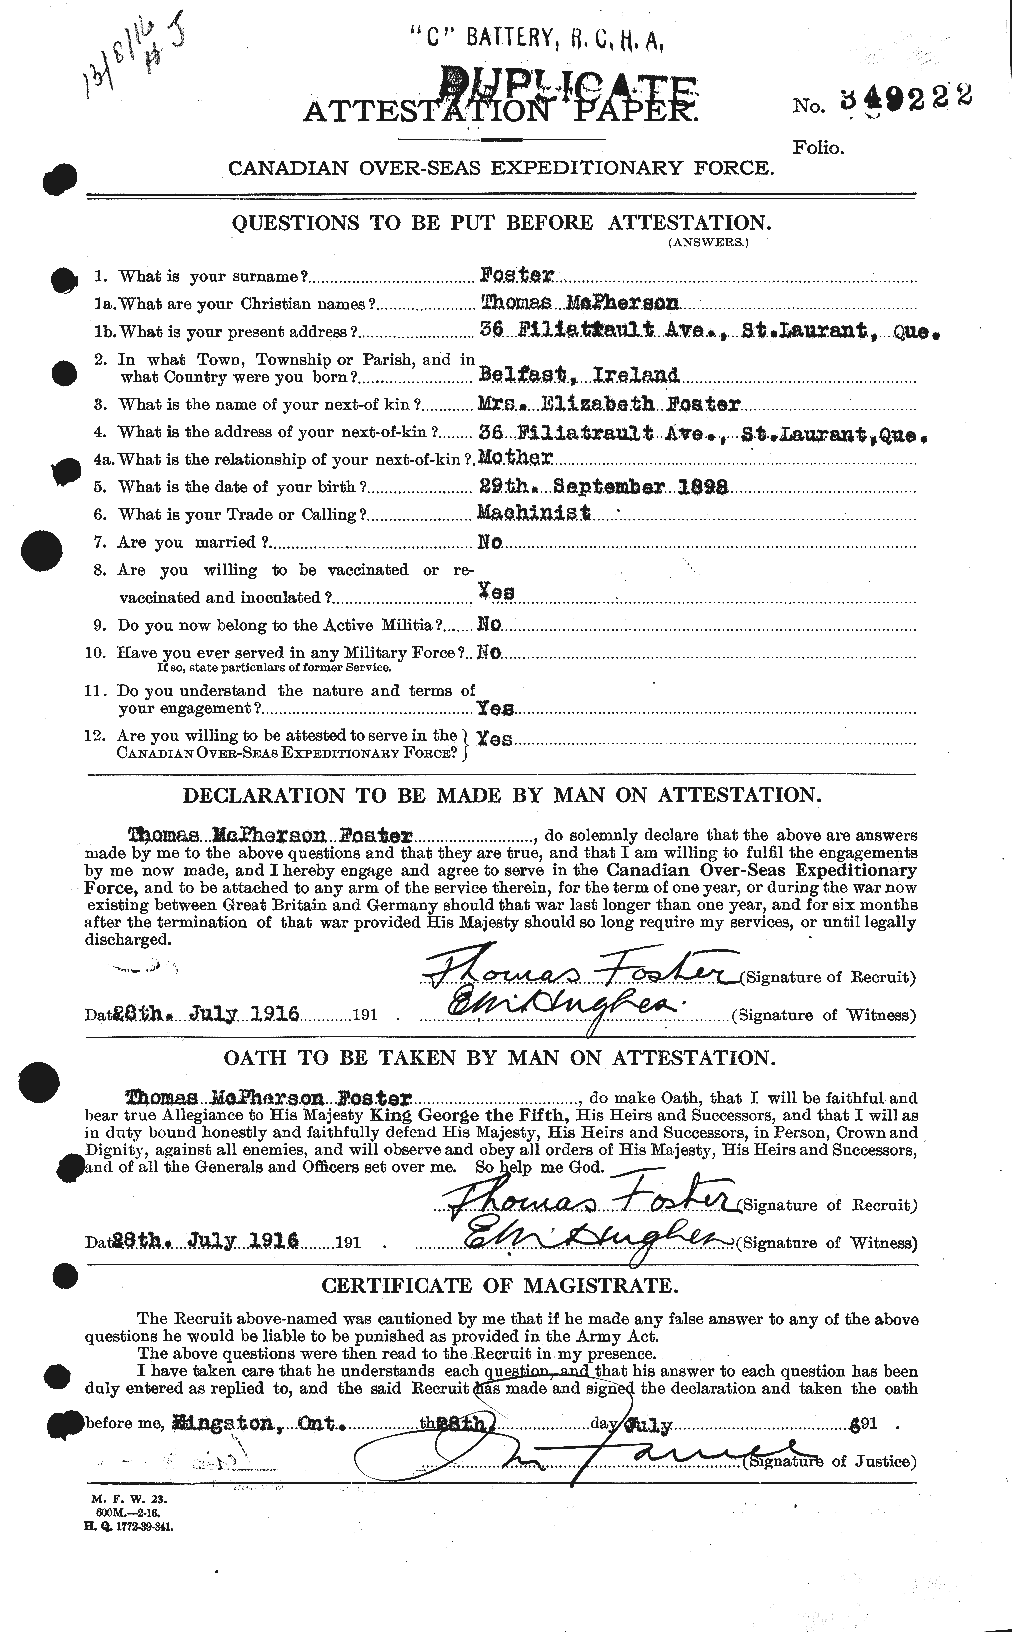 Dossiers du Personnel de la Première Guerre mondiale - CEC 335243a